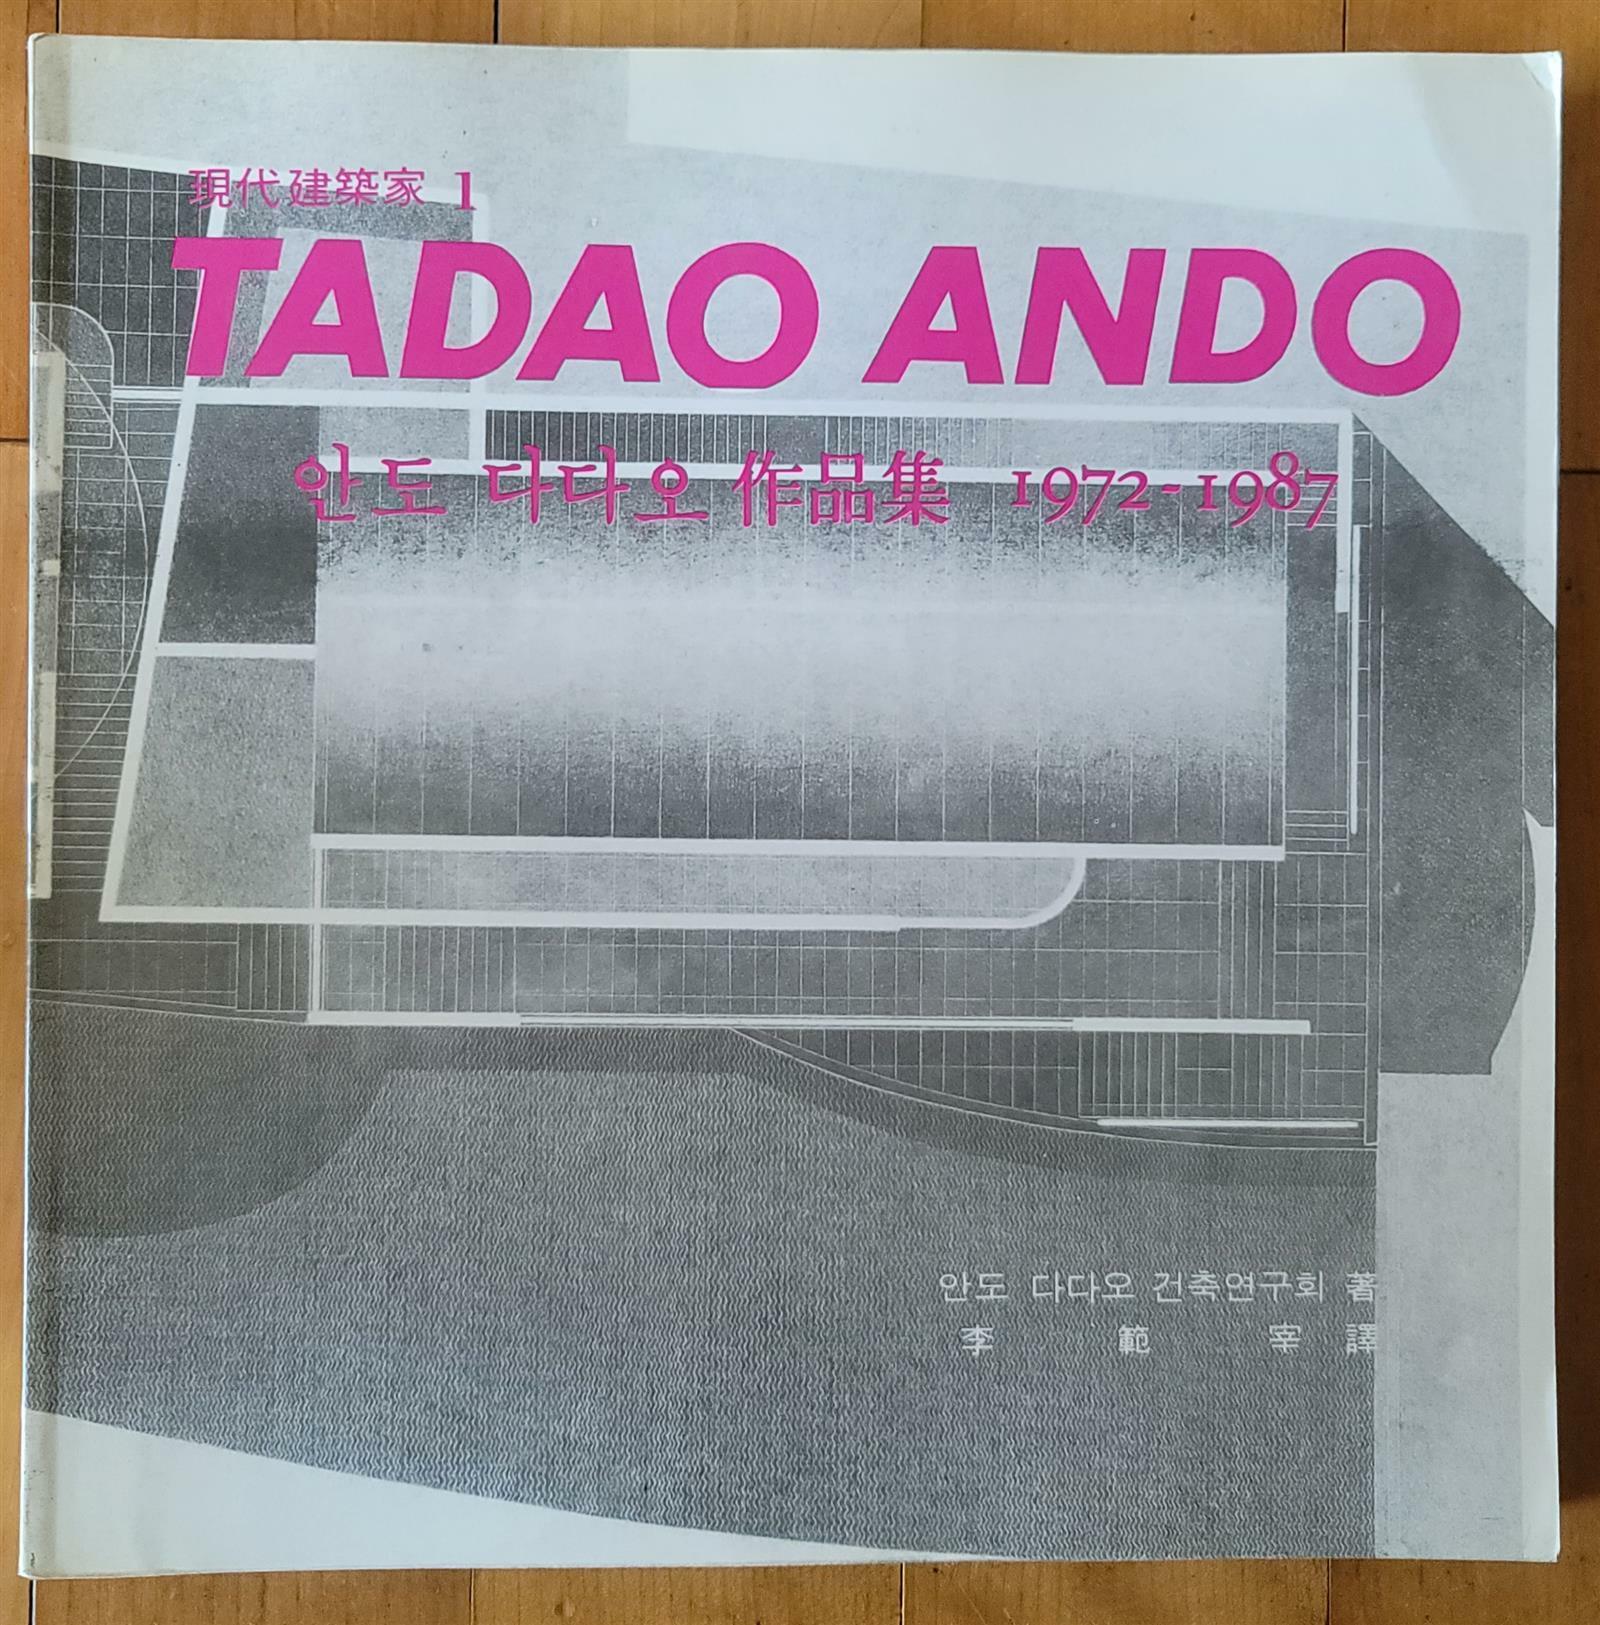 [중고] TADAO ANDO 안도 다다오 작품집 1972-1987 현대건축가 1 기문당 1989년 초판 상급